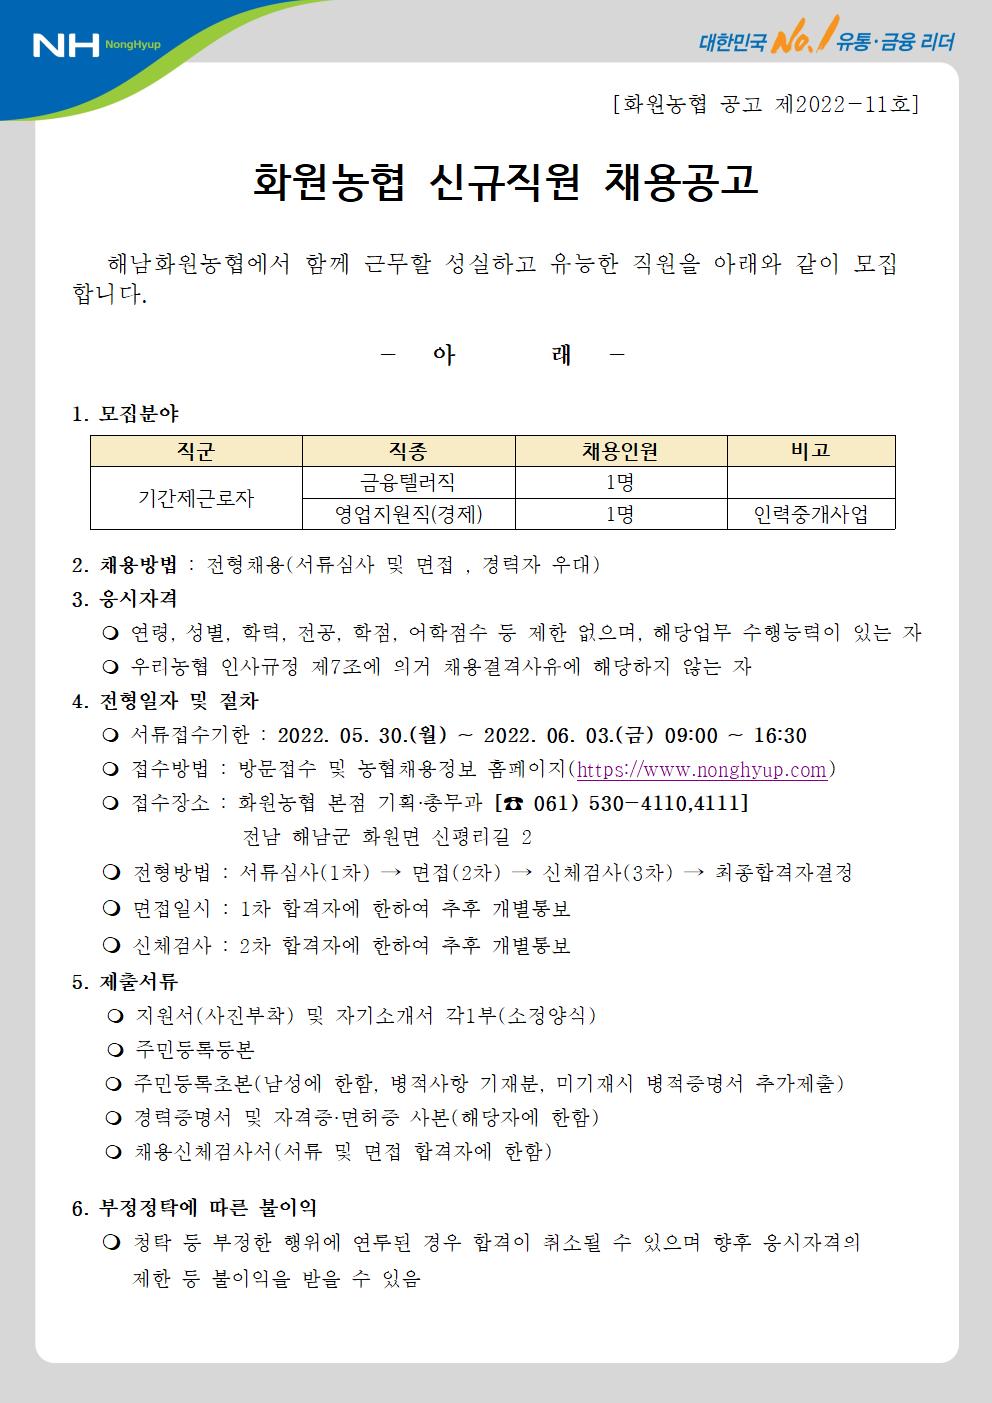 붙임1. 화원농협 신규직원 채용 공고문001.jpg